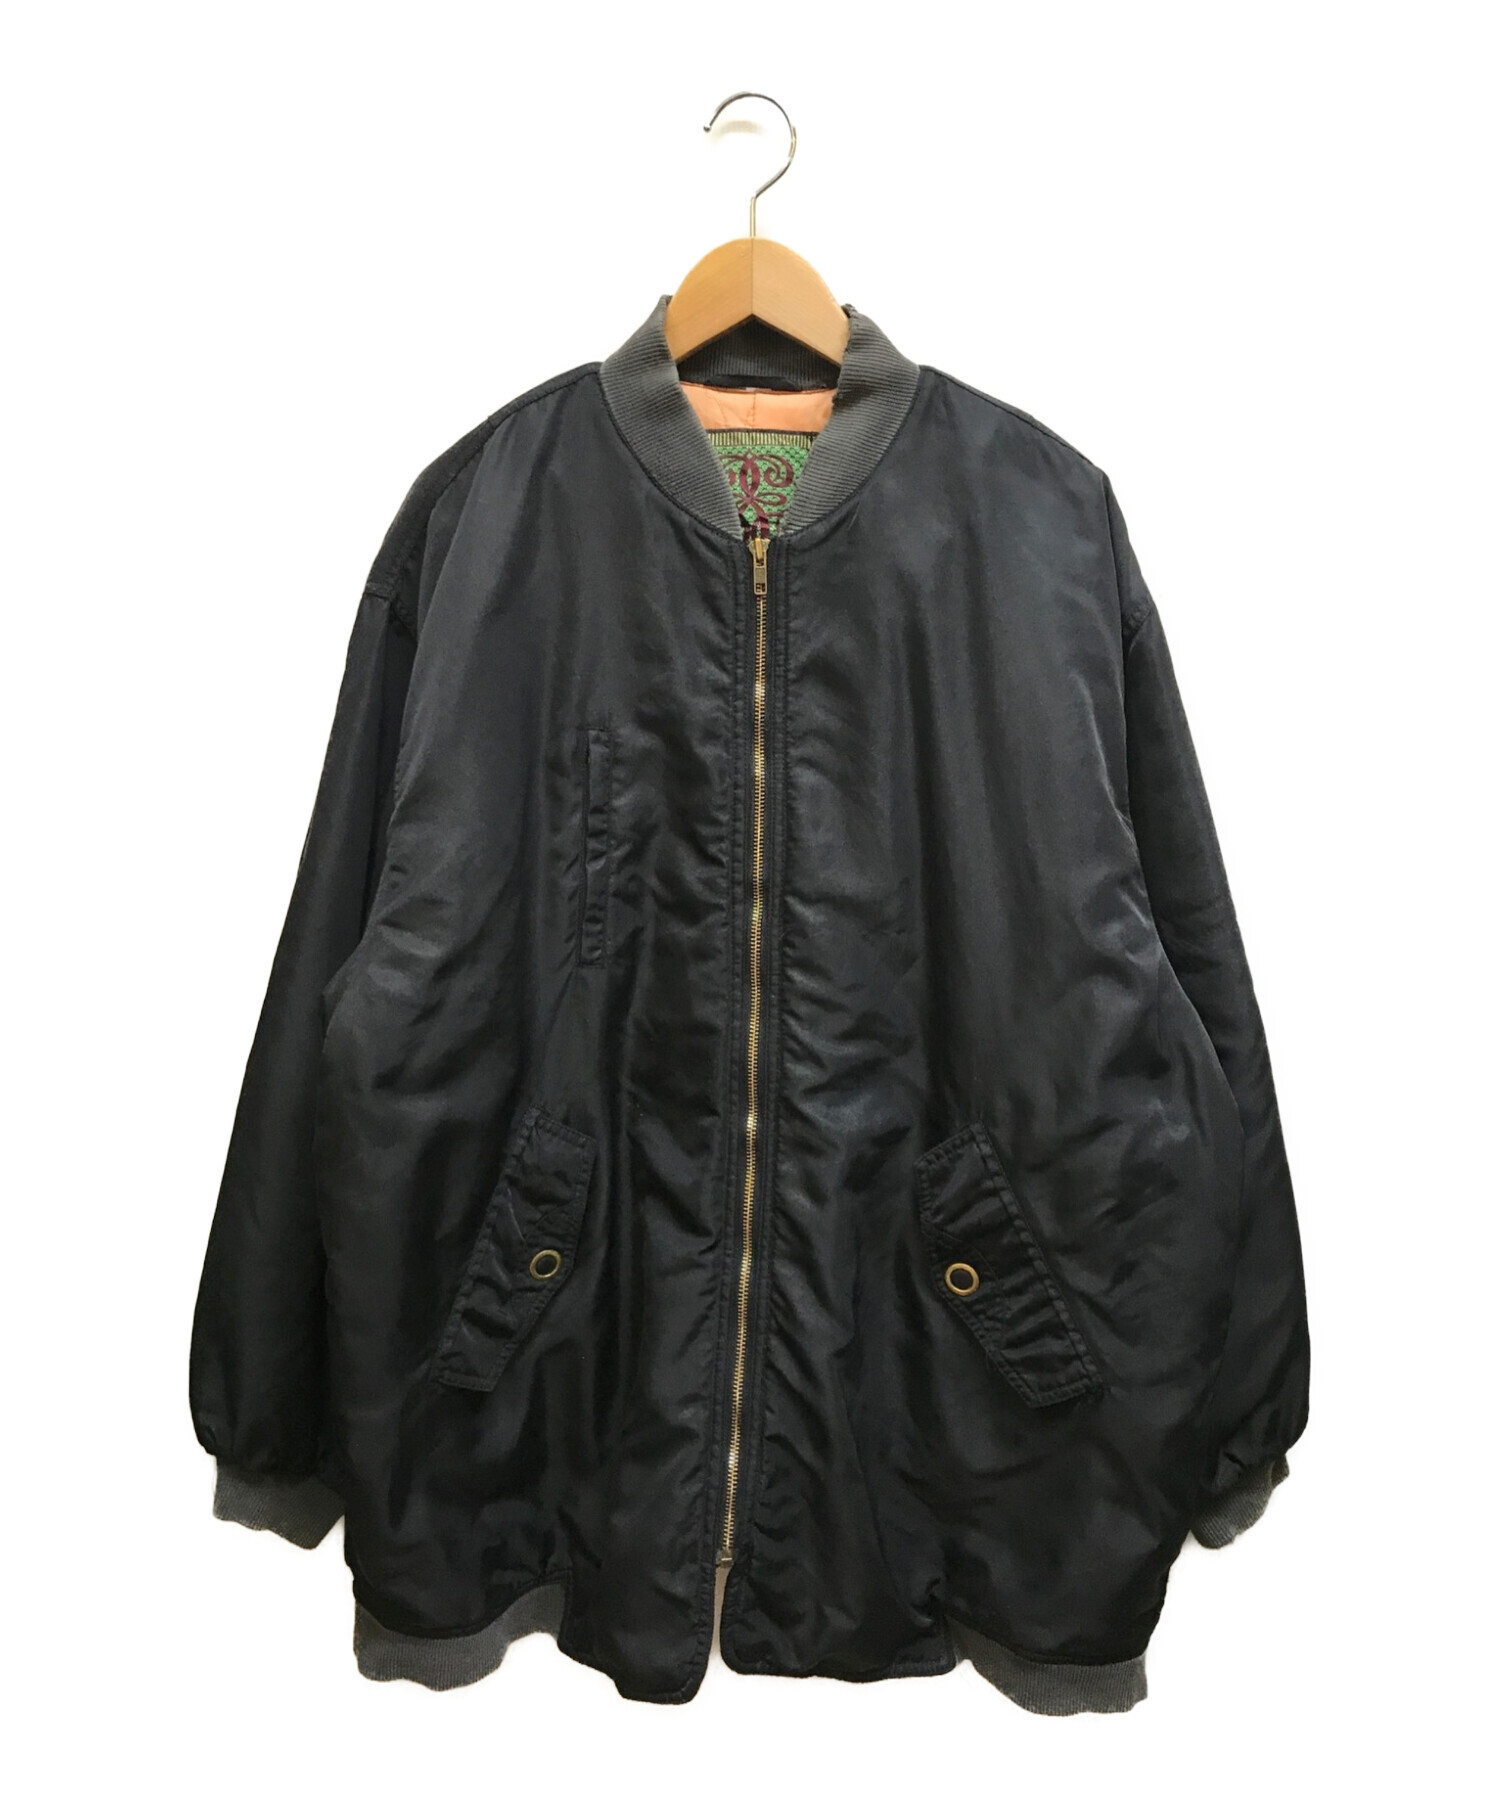 ESPRIT (エスプリ) オールドボンバージャケット ブラック サイズ:M